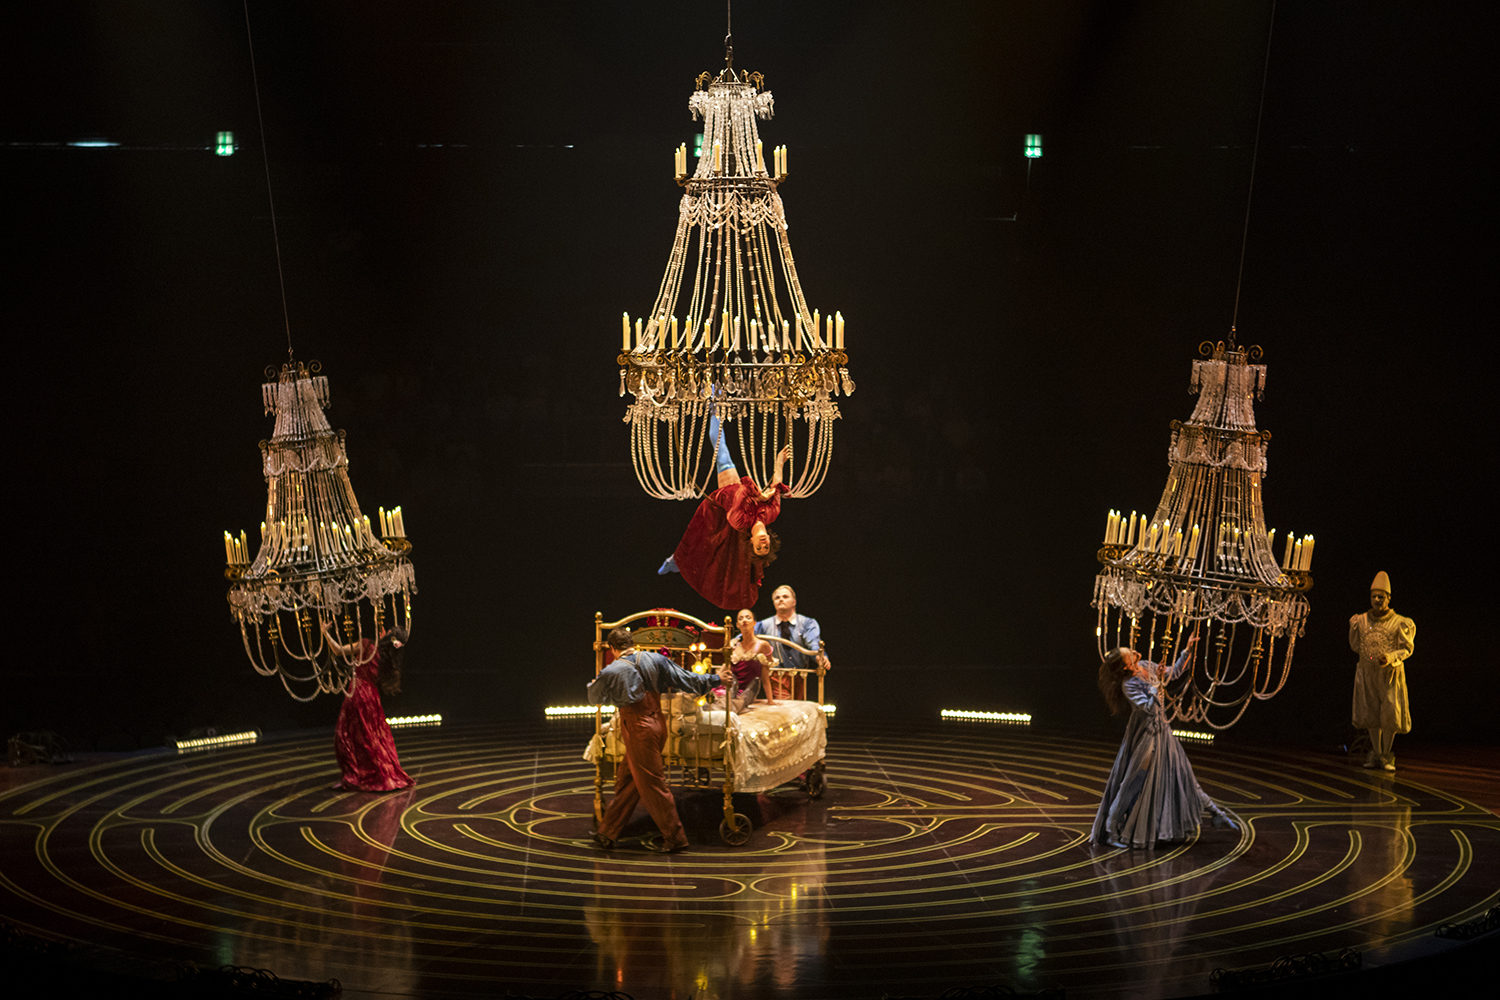 Cirque du Soleil vuelve a México con el espectacular show "Corteo" 4